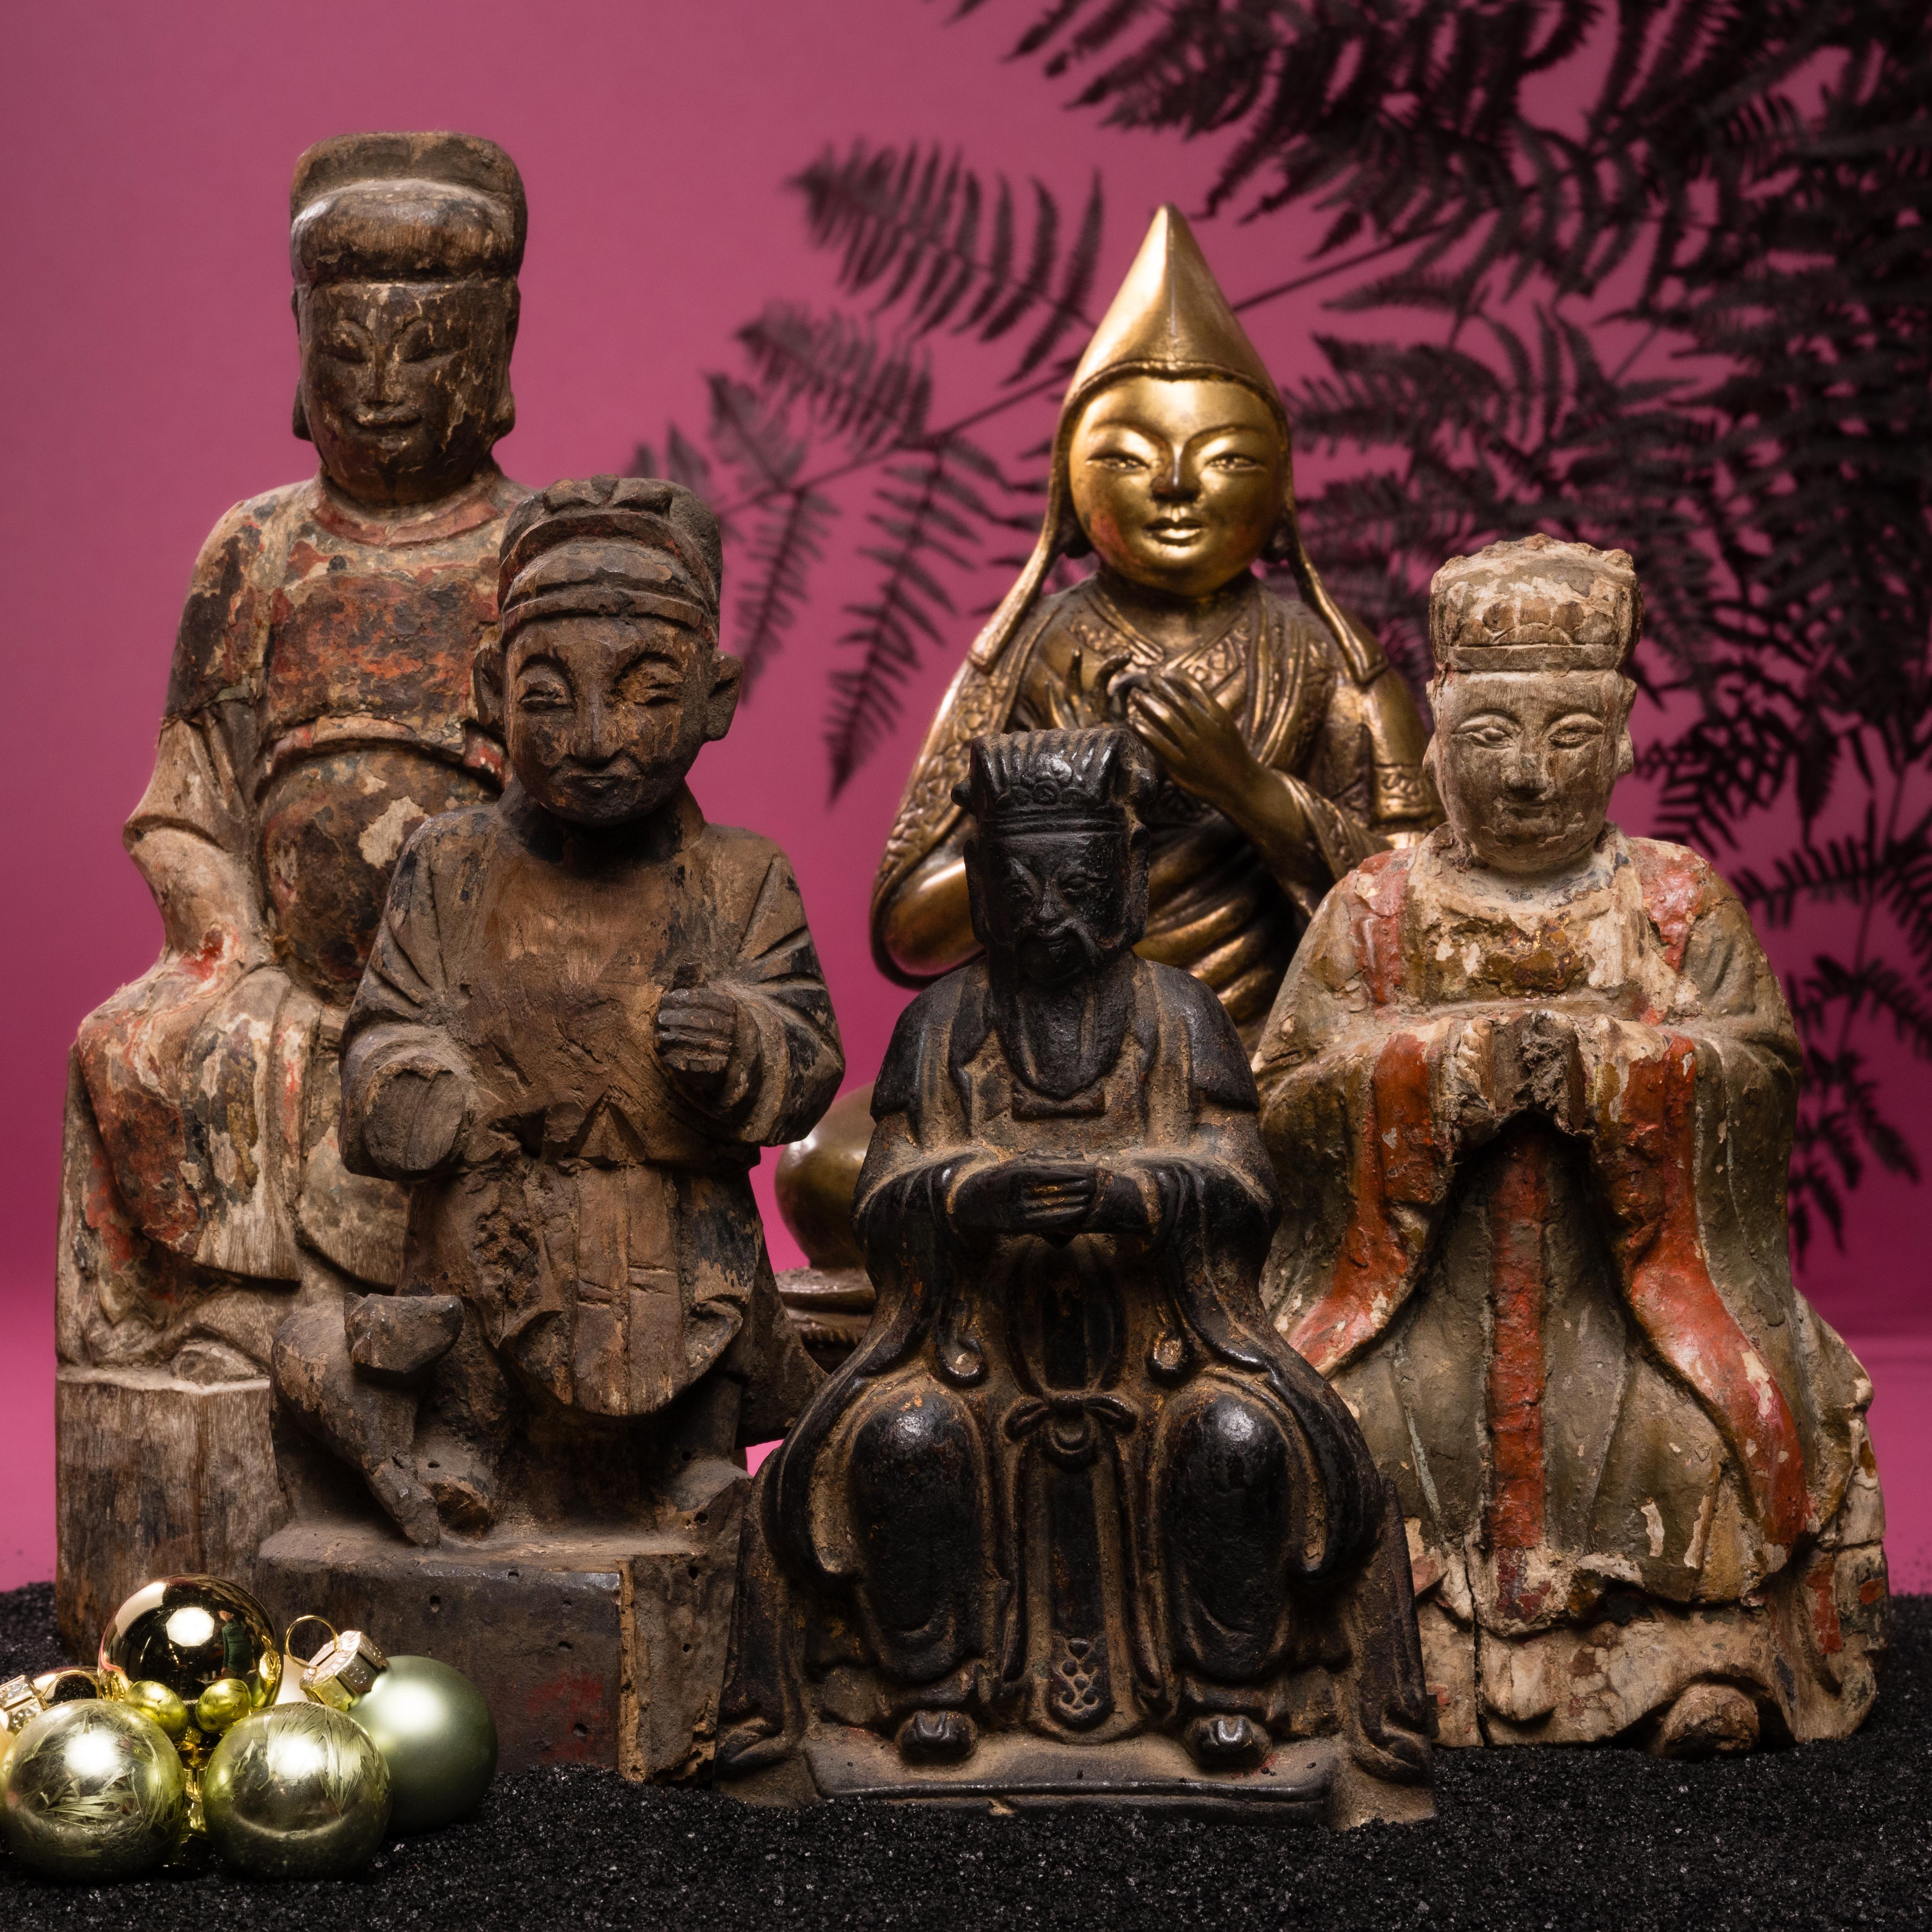 Die Ahnenverehrung vor dem Hausaltar war ein fester Bestandteil des traditionellen chinesischen Hauslebens und wurde oft mit gemalten Ahnenporträts oder Ahnenfiguren auf dem Tisch durchgeführt. Diese Ahnenfigur aus dem frühen 19. Jahrhundert wurde